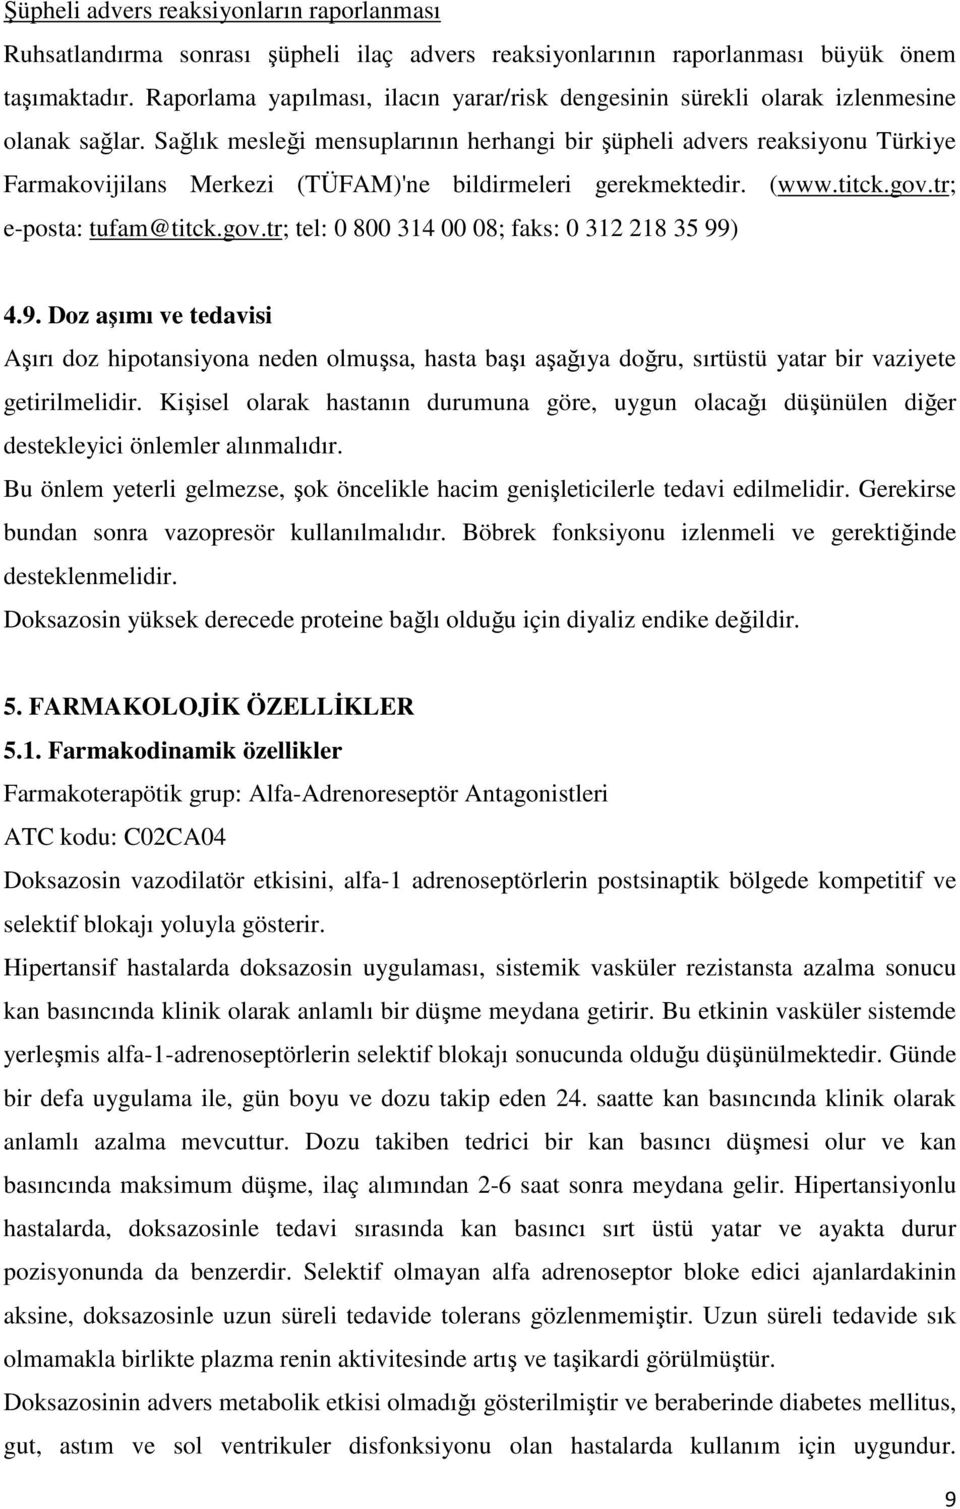 Sağlık mesleği mensuplarının herhangi bir şüpheli advers reaksiyonu Türkiye Farmakovijilans Merkezi (TÜFAM)'ne bildirmeleri gerekmektedir. (www.titck.gov.